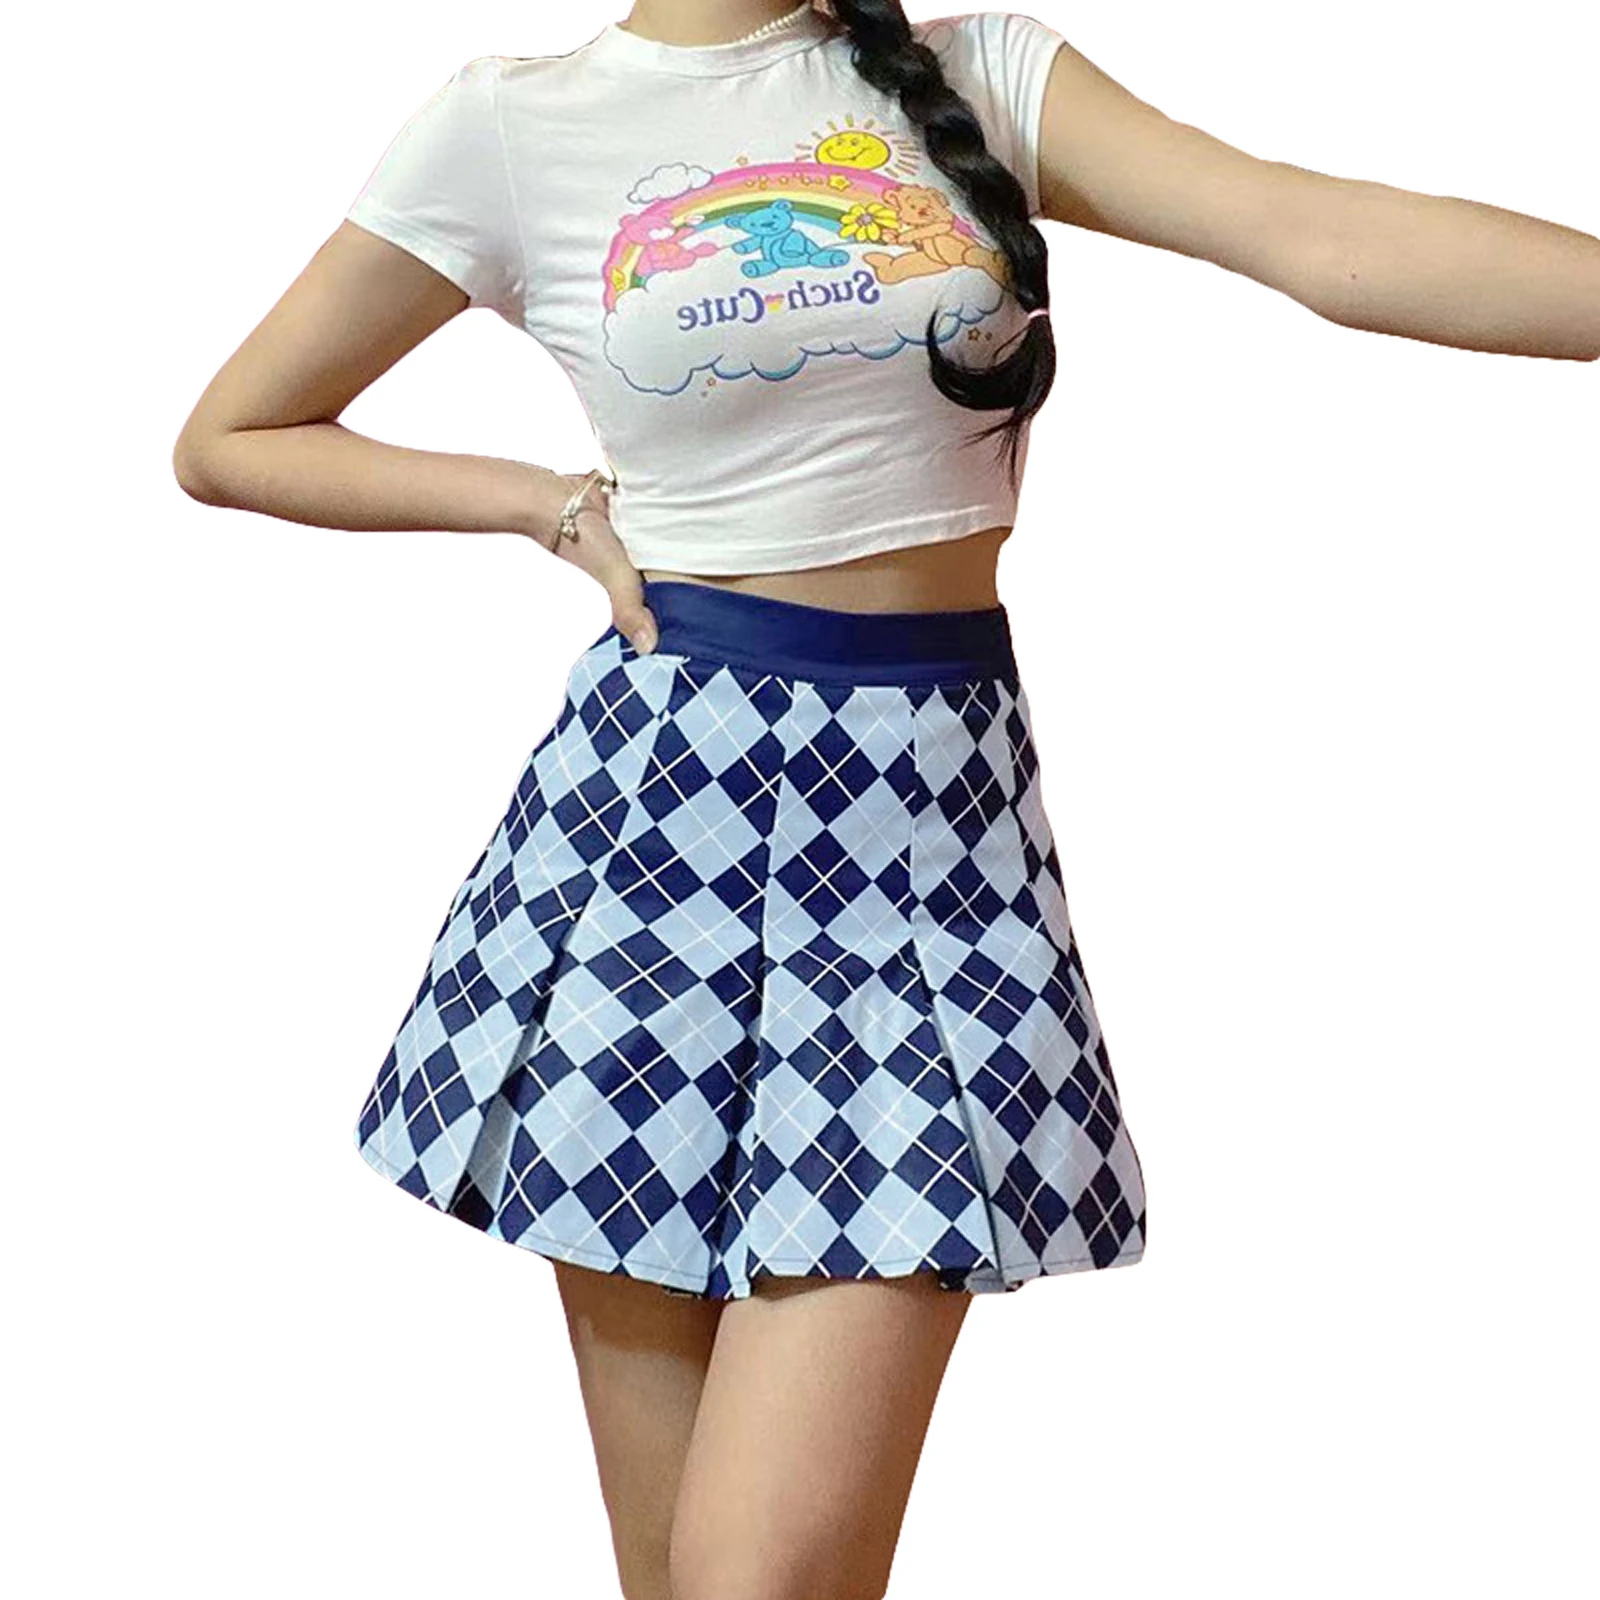 

Женская плиссированная мини-юбка, модная короткая трапециевидная юбка с высокой талией, молнией сбоку и принтом ромбиков